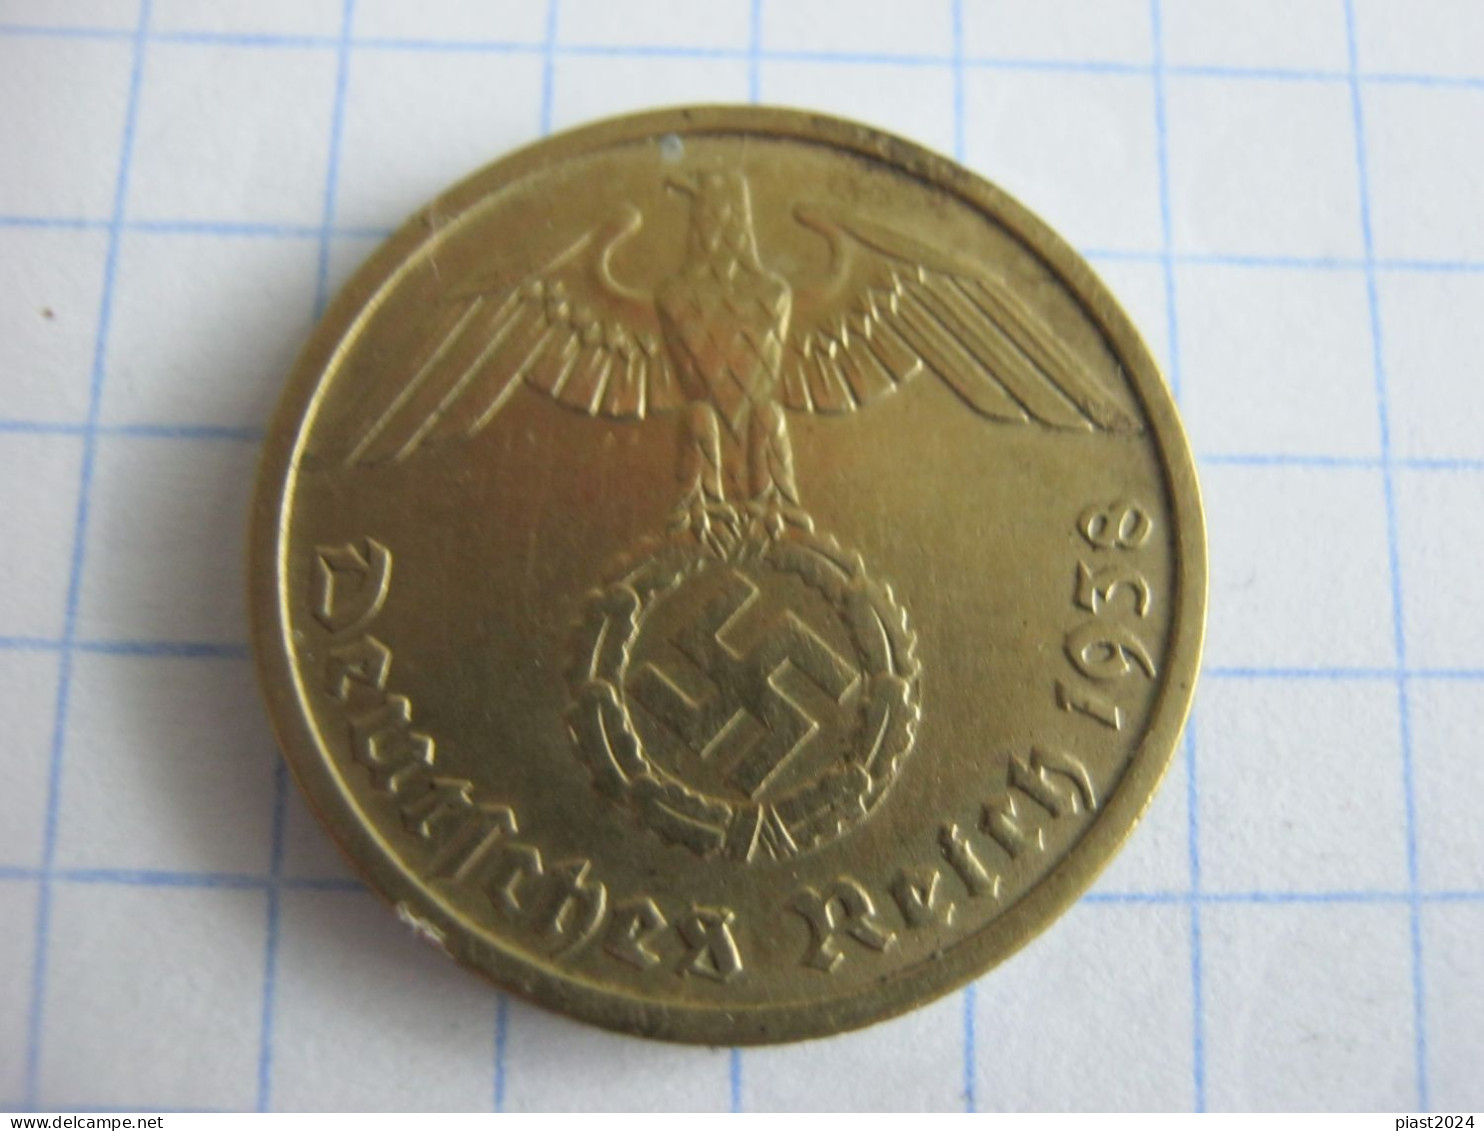 Germany 10 Reichspfennig 1938 D - 10 Reichspfennig